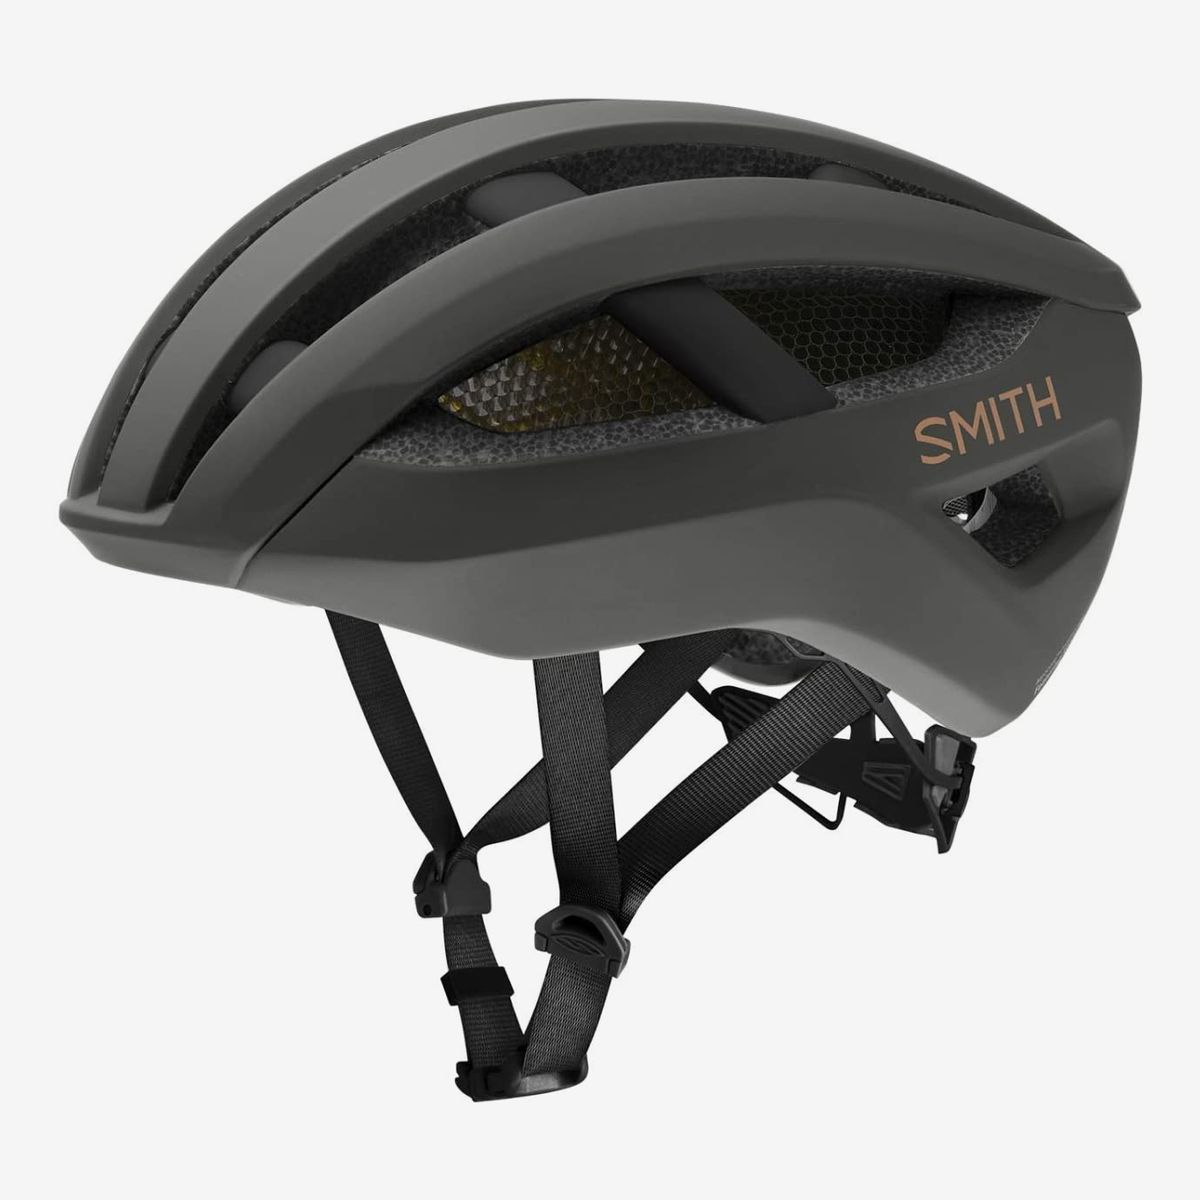 small ladies bike helmet